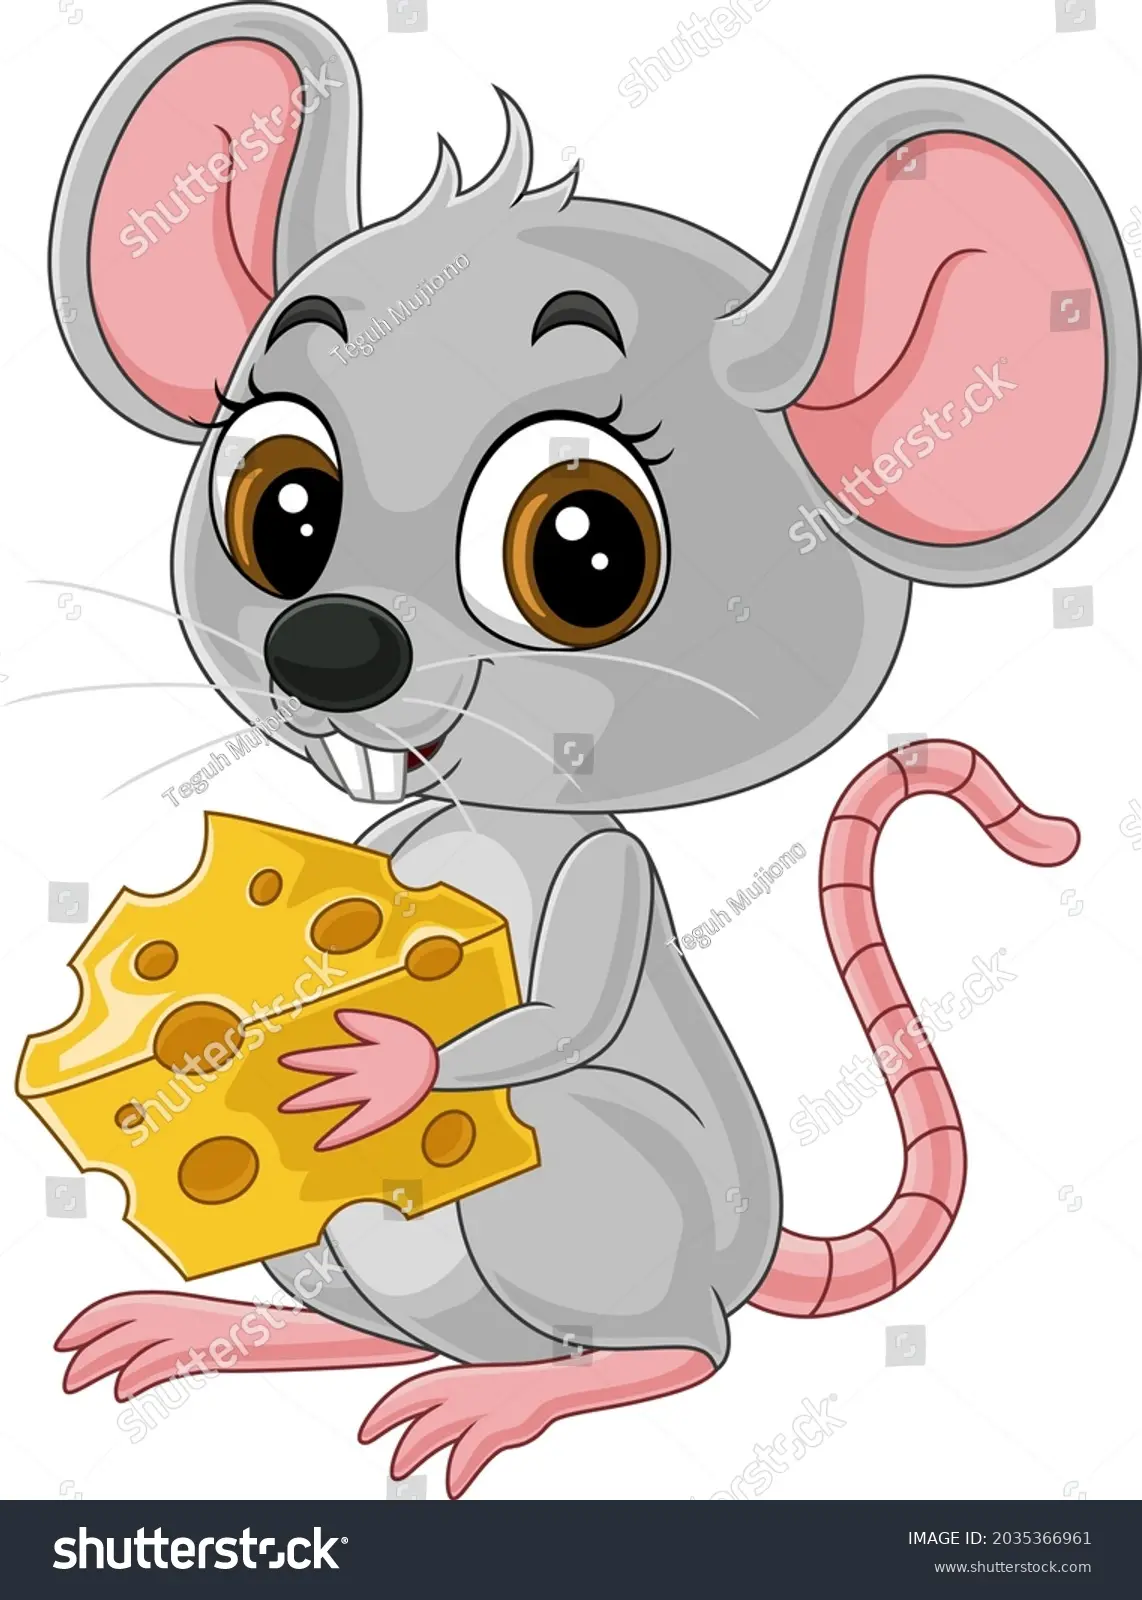 dibujo raton con queso - Cómo se escribe el ratón come queso